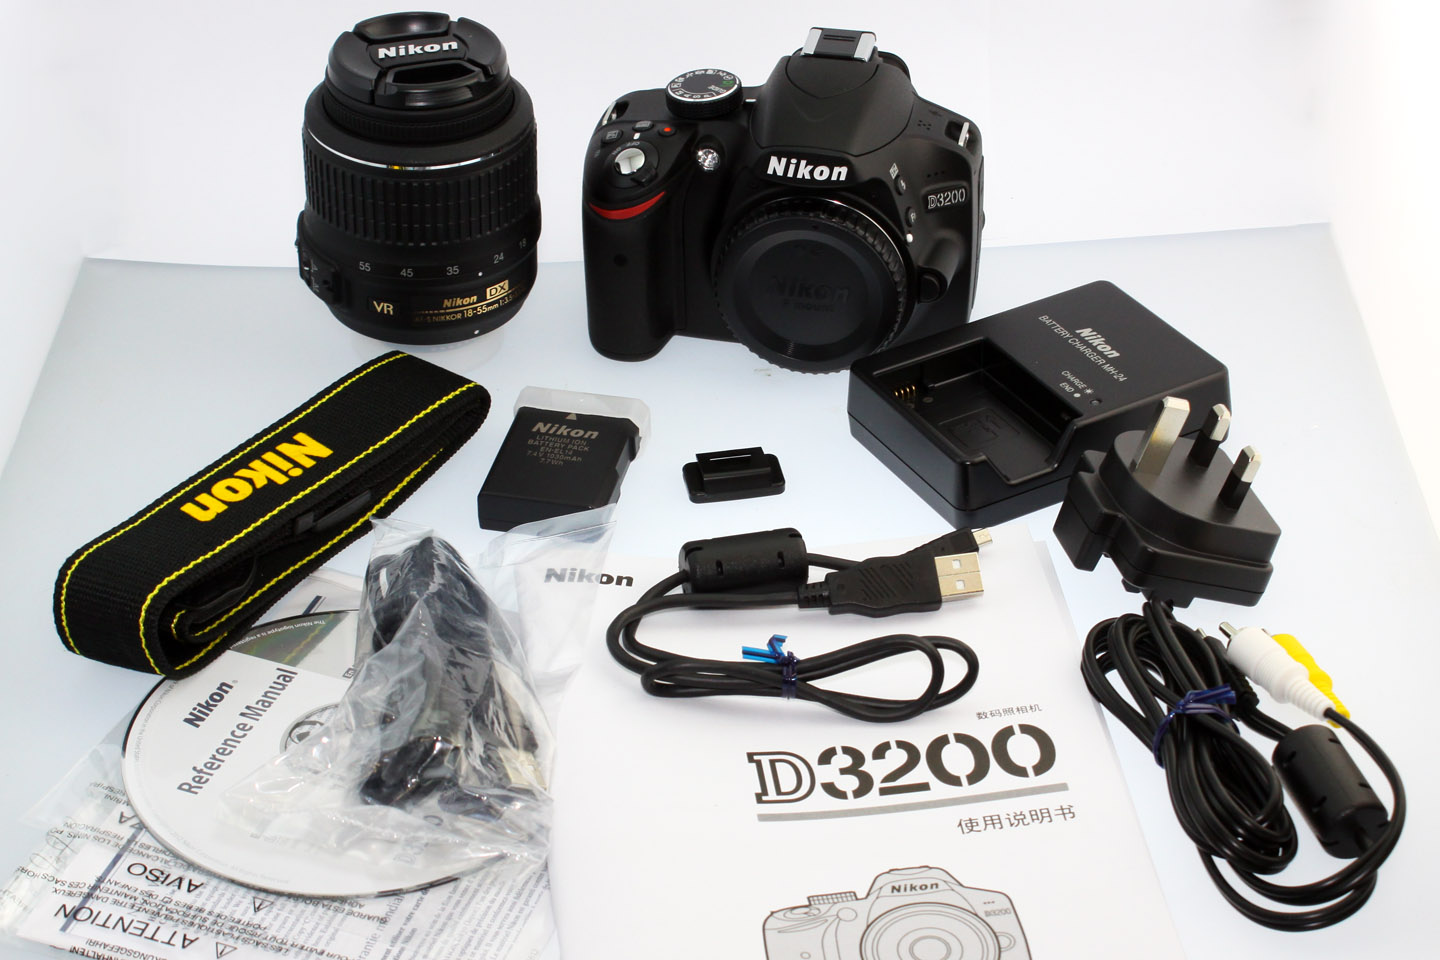 Bộ sản phẩm máy ảnh giá rẻ D3200 được trang bị đầy đủ phụ kiện và thiết bị